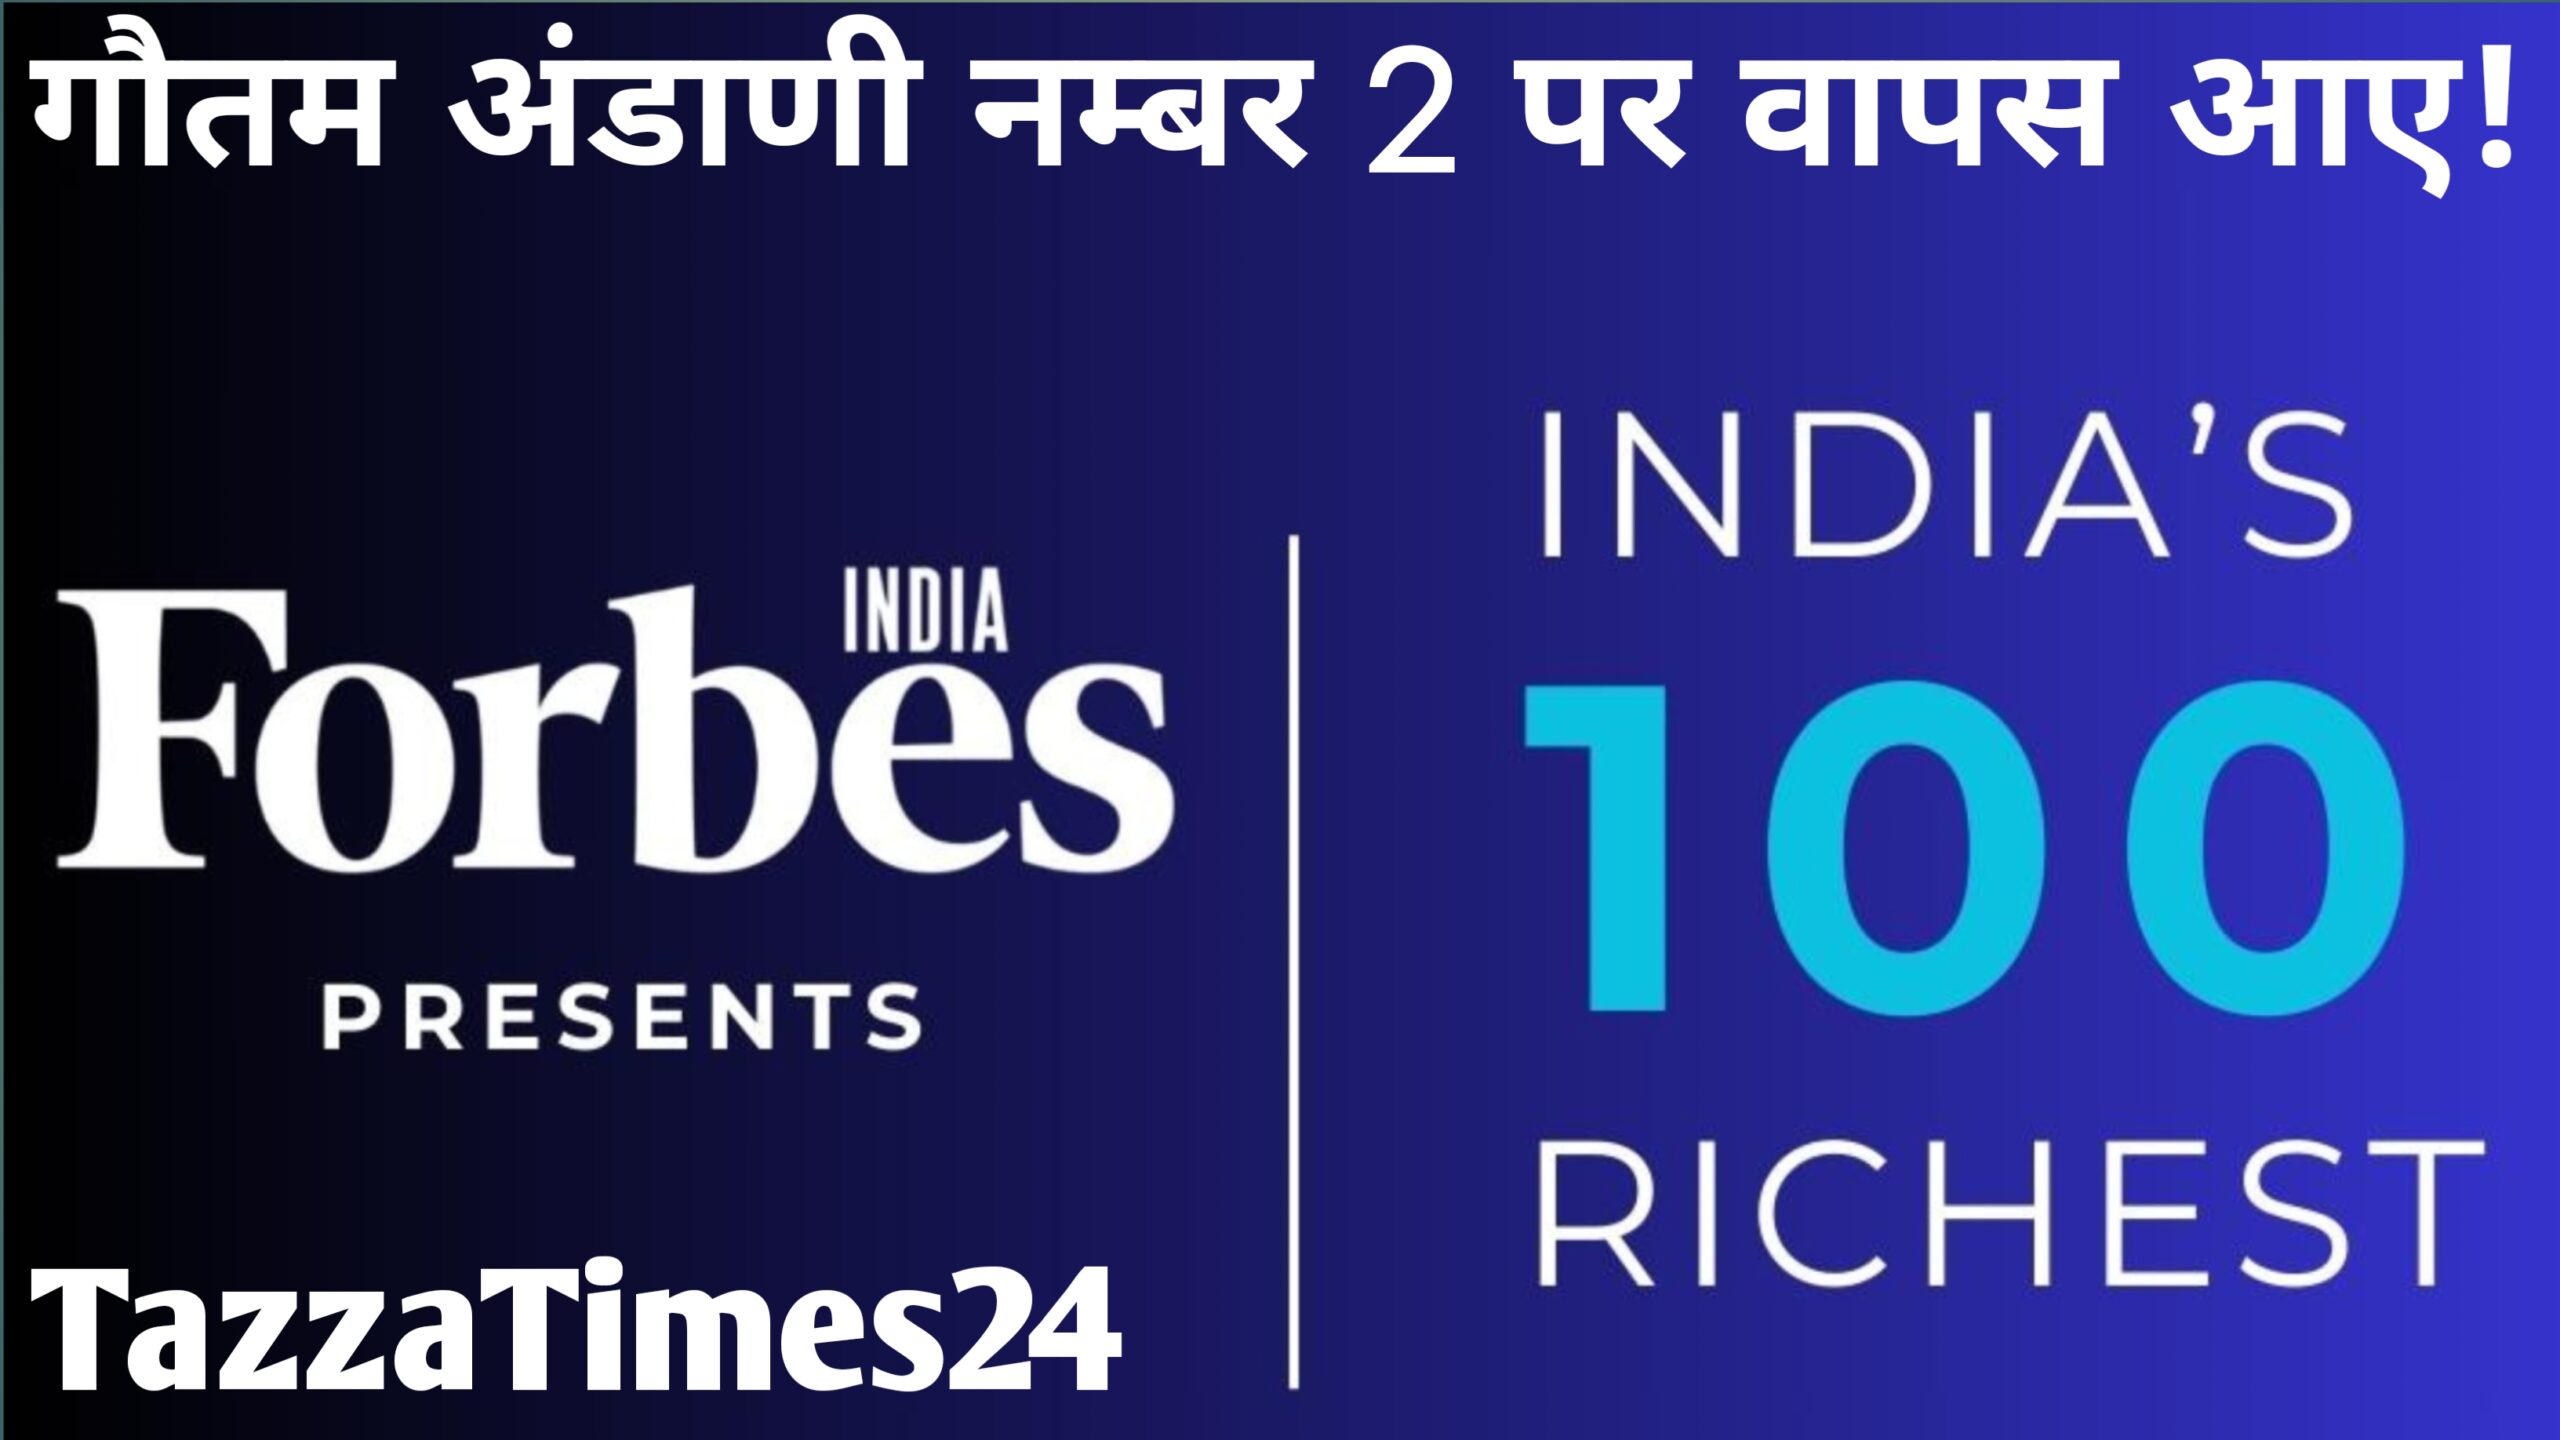 Forbes India के द्वारा जारी की गई इंडिया के 100 सबसे अमीर भारतीय